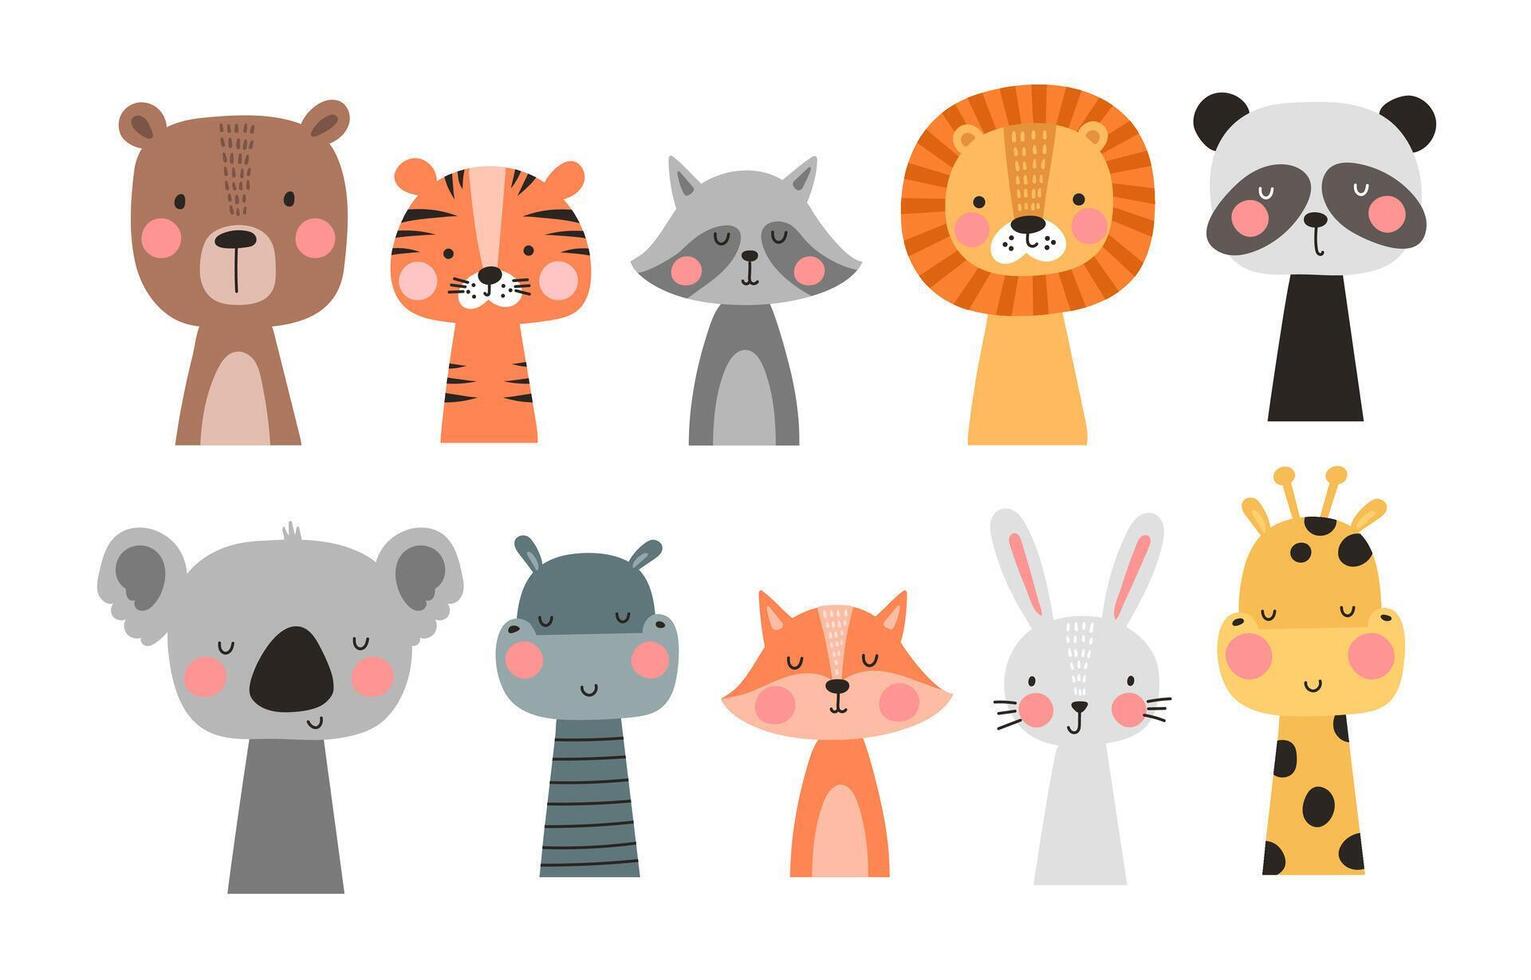 dibujos animados linda animales conjunto para bebé tarjeta y invitación. vector ilustración. león, conejito, oso, panda, tigre, conejo, zorro.